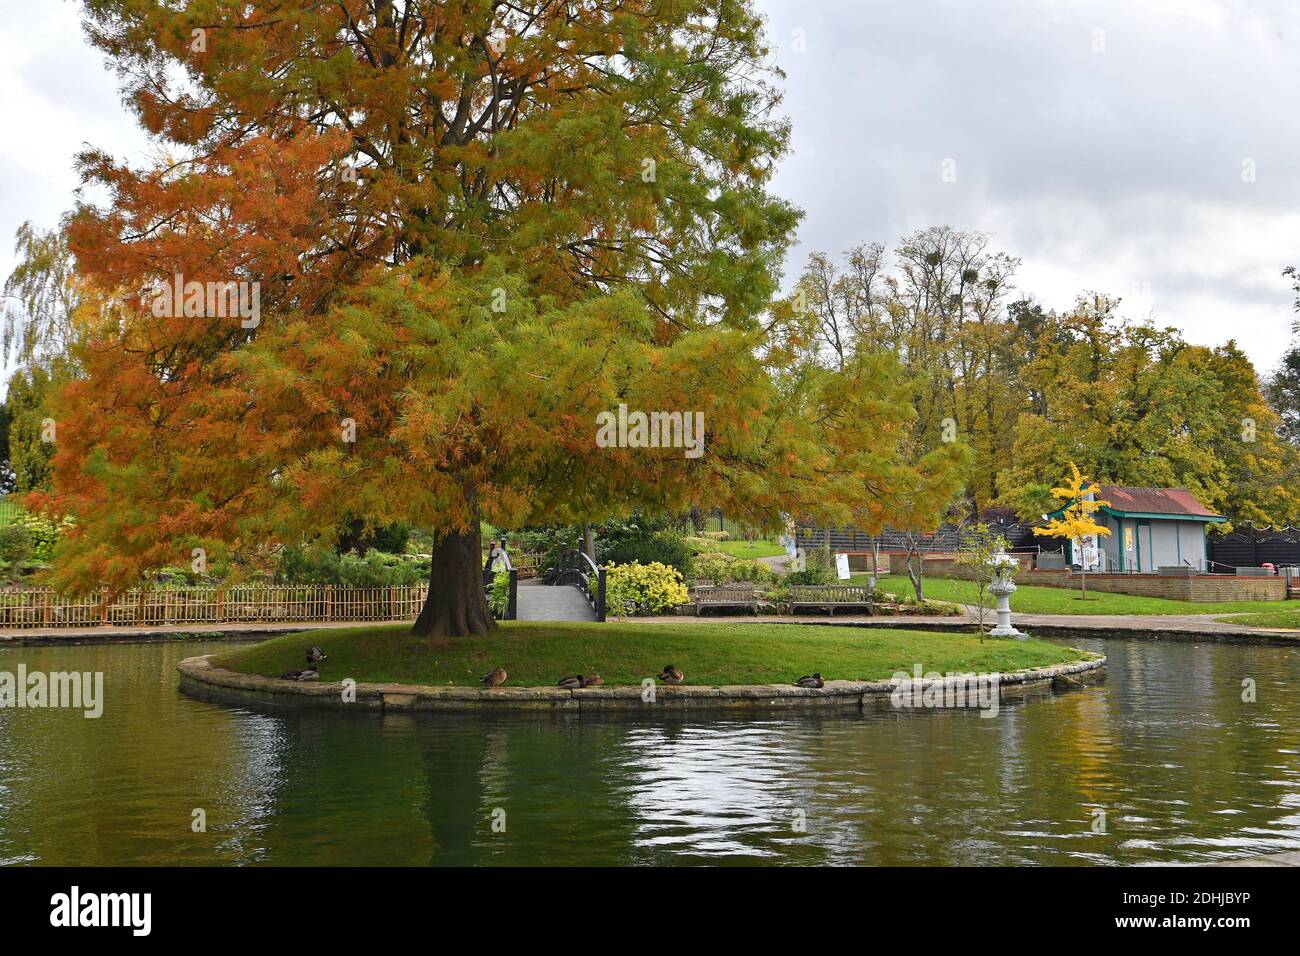 Caratteristica su Stoke Park, Guildford - Autumnal colori, come il lavoro continua a ripristinare e migliorare i giardini orientali. Guildford, Surrey. Foto scattata il 20 ottobre 2020 Foto Stock